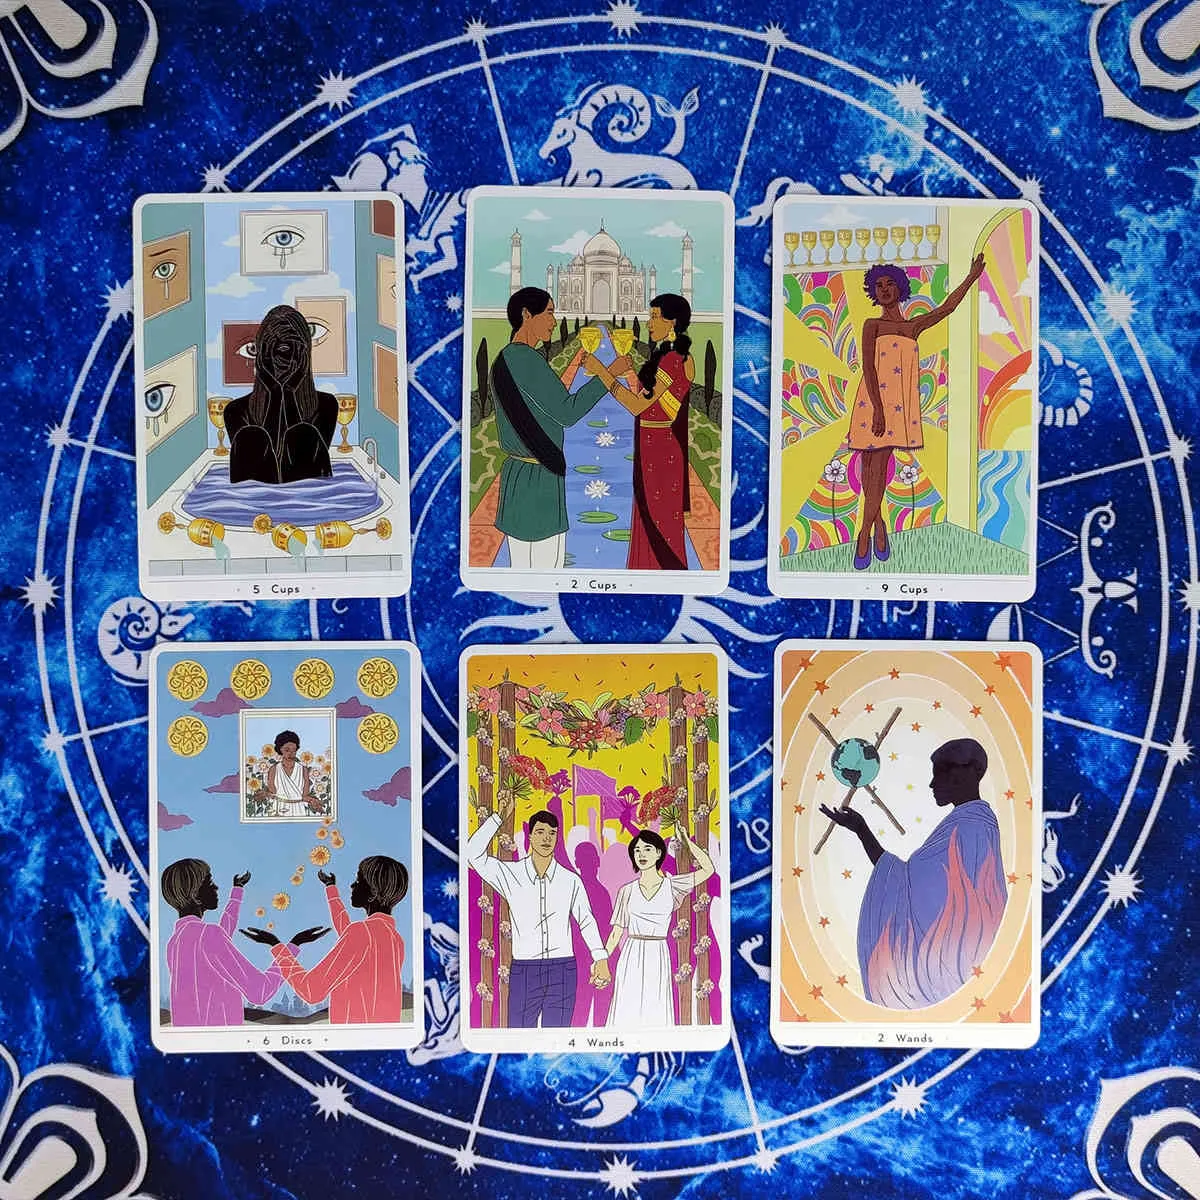 New True Heart Intuitive Tarot Cards Guidance Divination Deck Entertainment Parties Jeu de société / Box